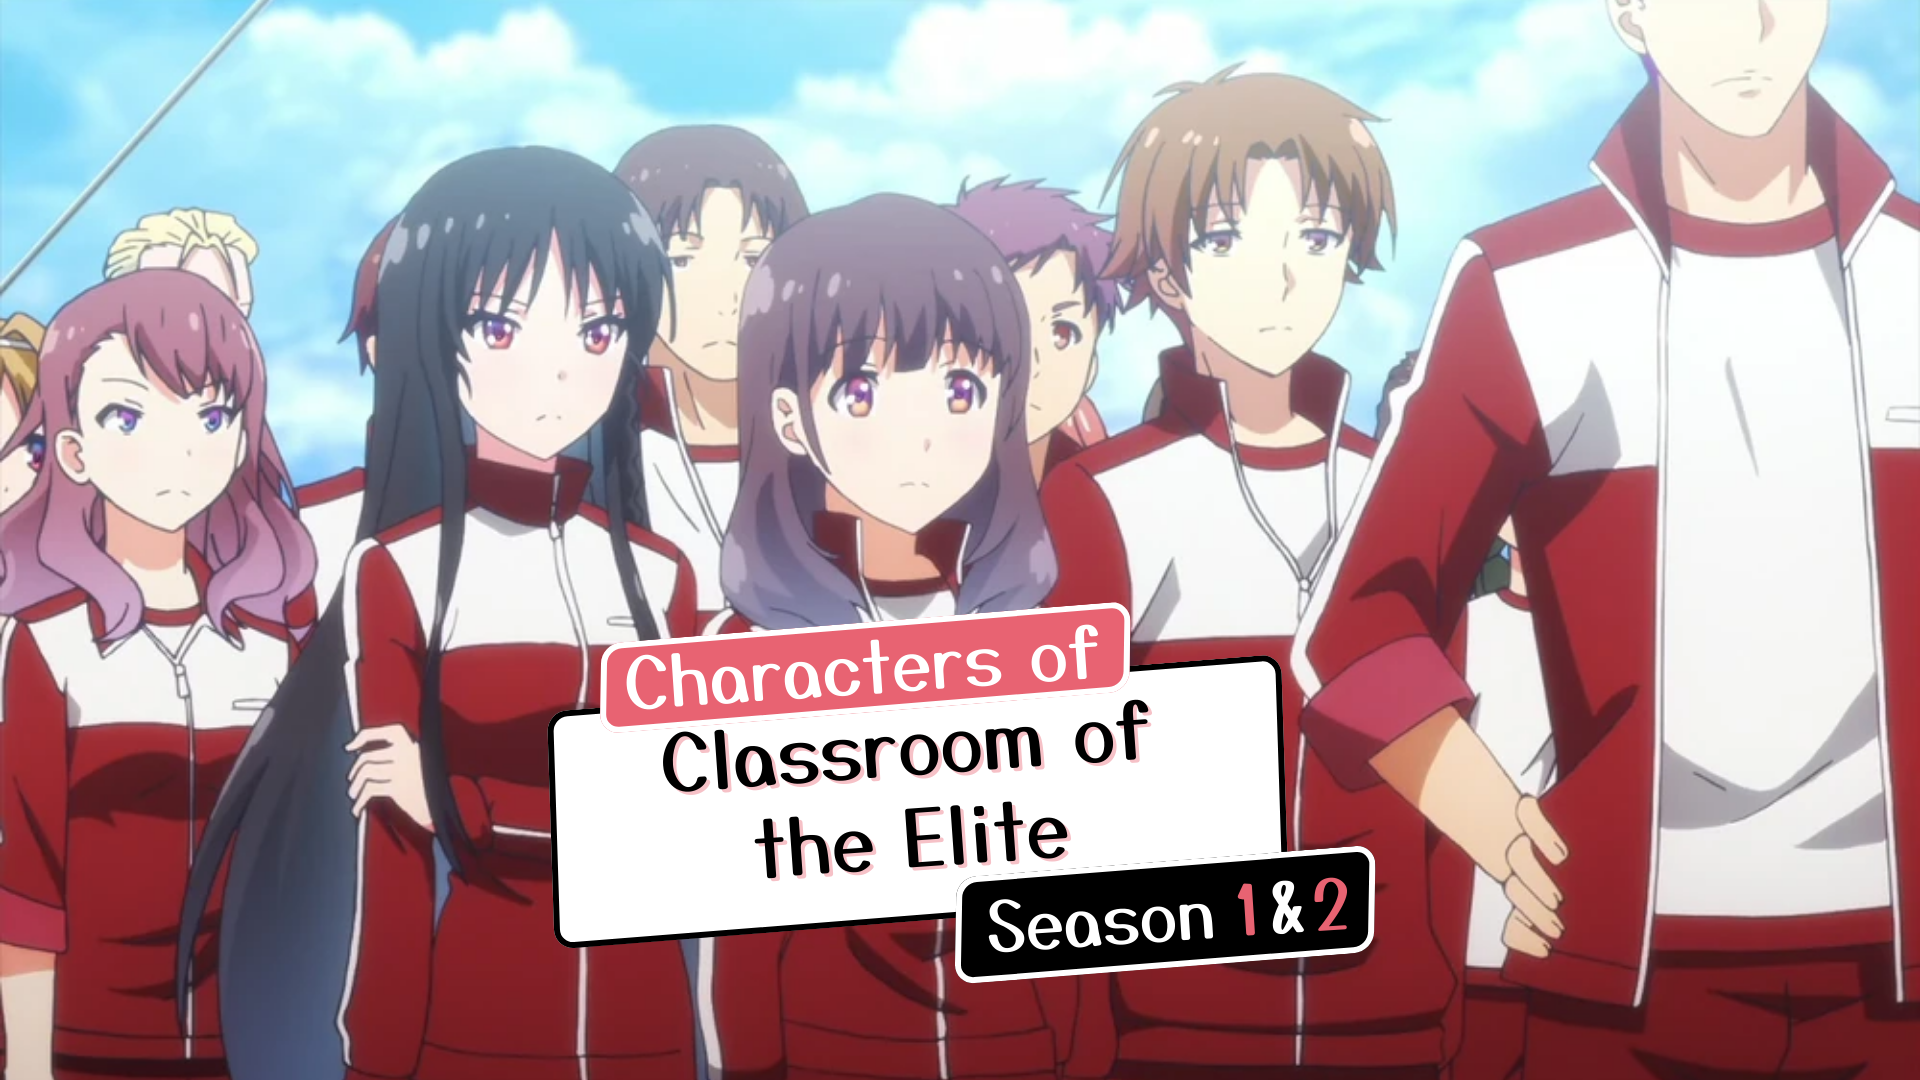 Anime : Classroom Of The Elite Studios : Lerche #classroomoftheelite  #ayanokouji #animequotes #anime #animeschool #relatable #relatable... |  Instagram